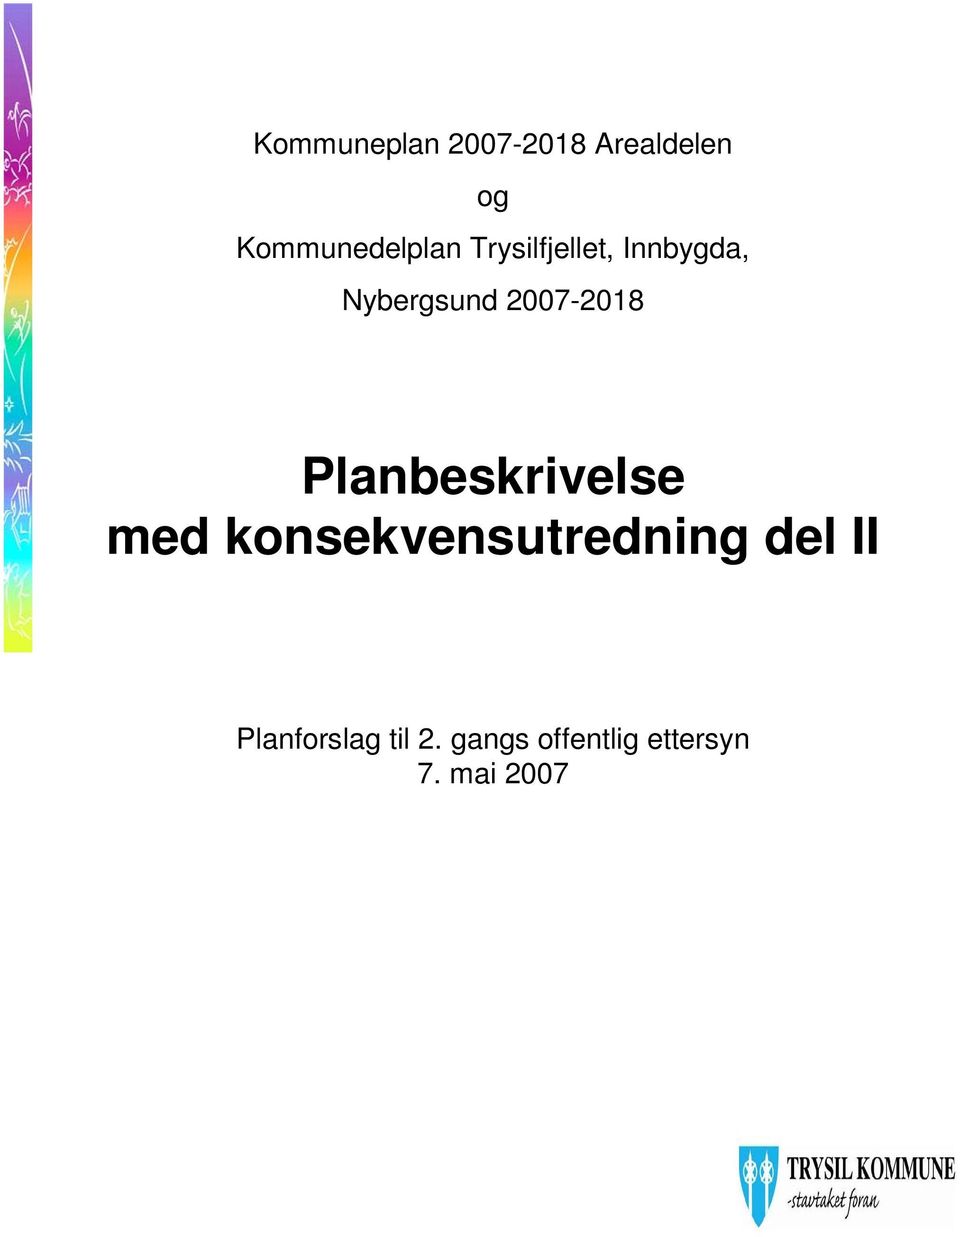 Nybergsund 2007-2018 Planbeskrivelse med